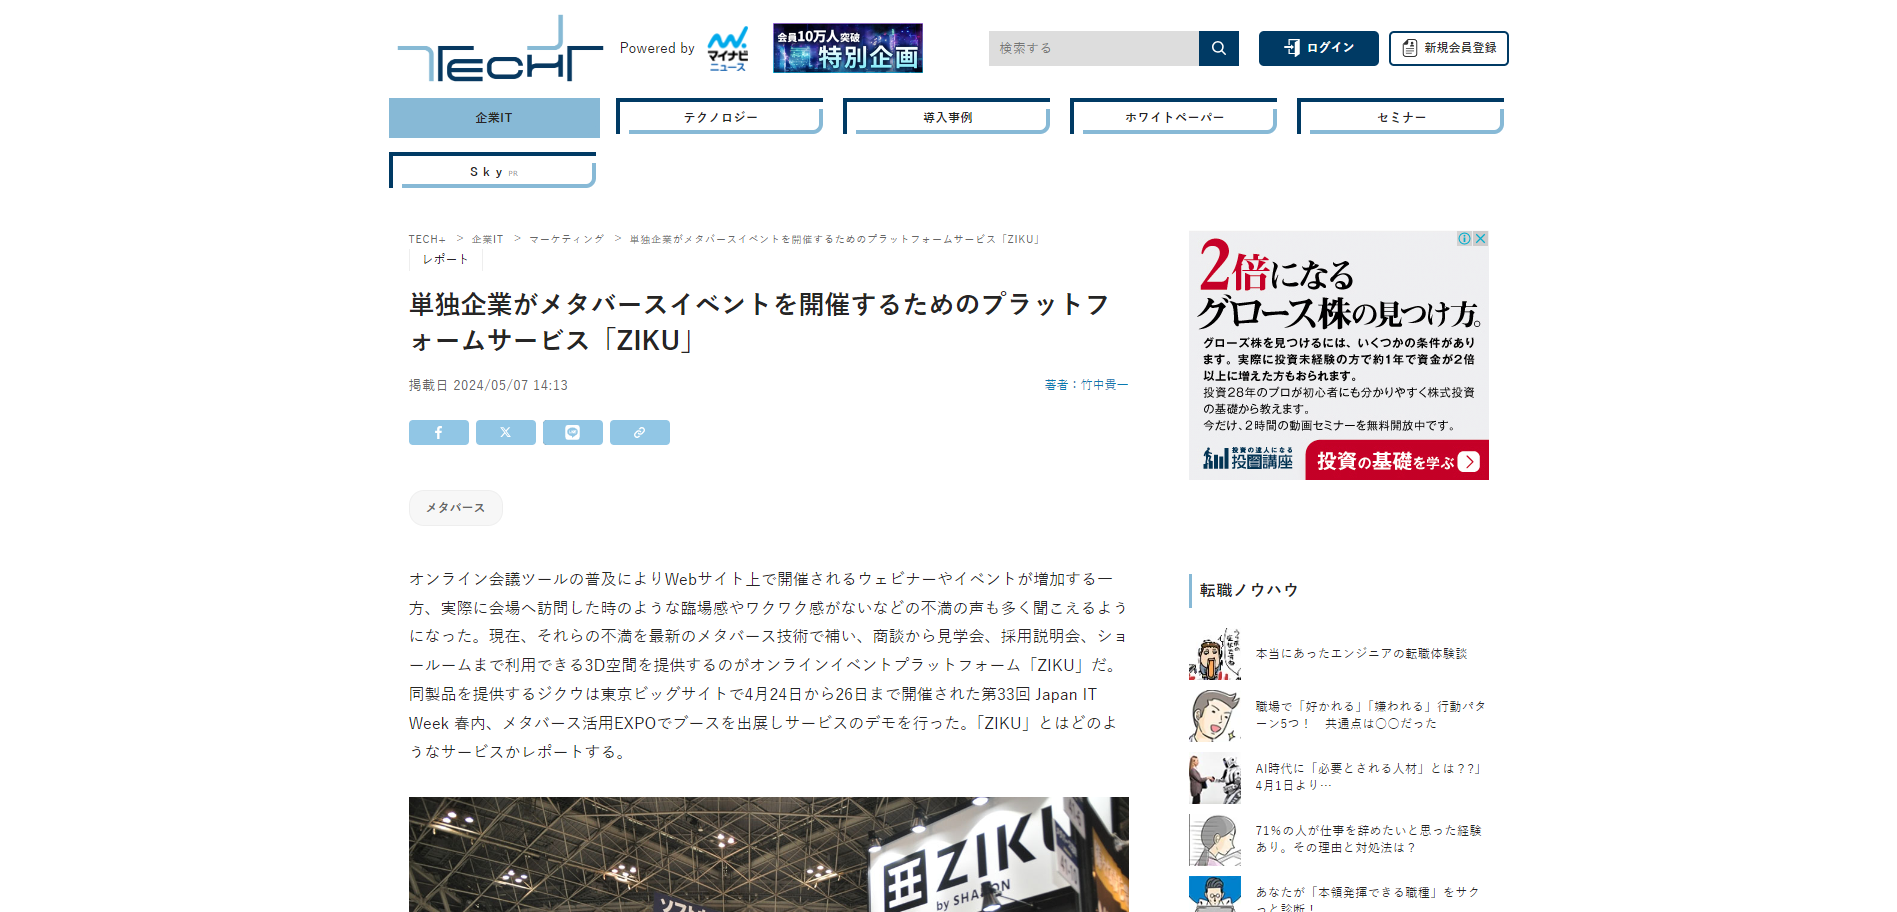 【メディア掲載】「TECH+」に、Japan IT Weekジクウブース出展の様子が掲載されました